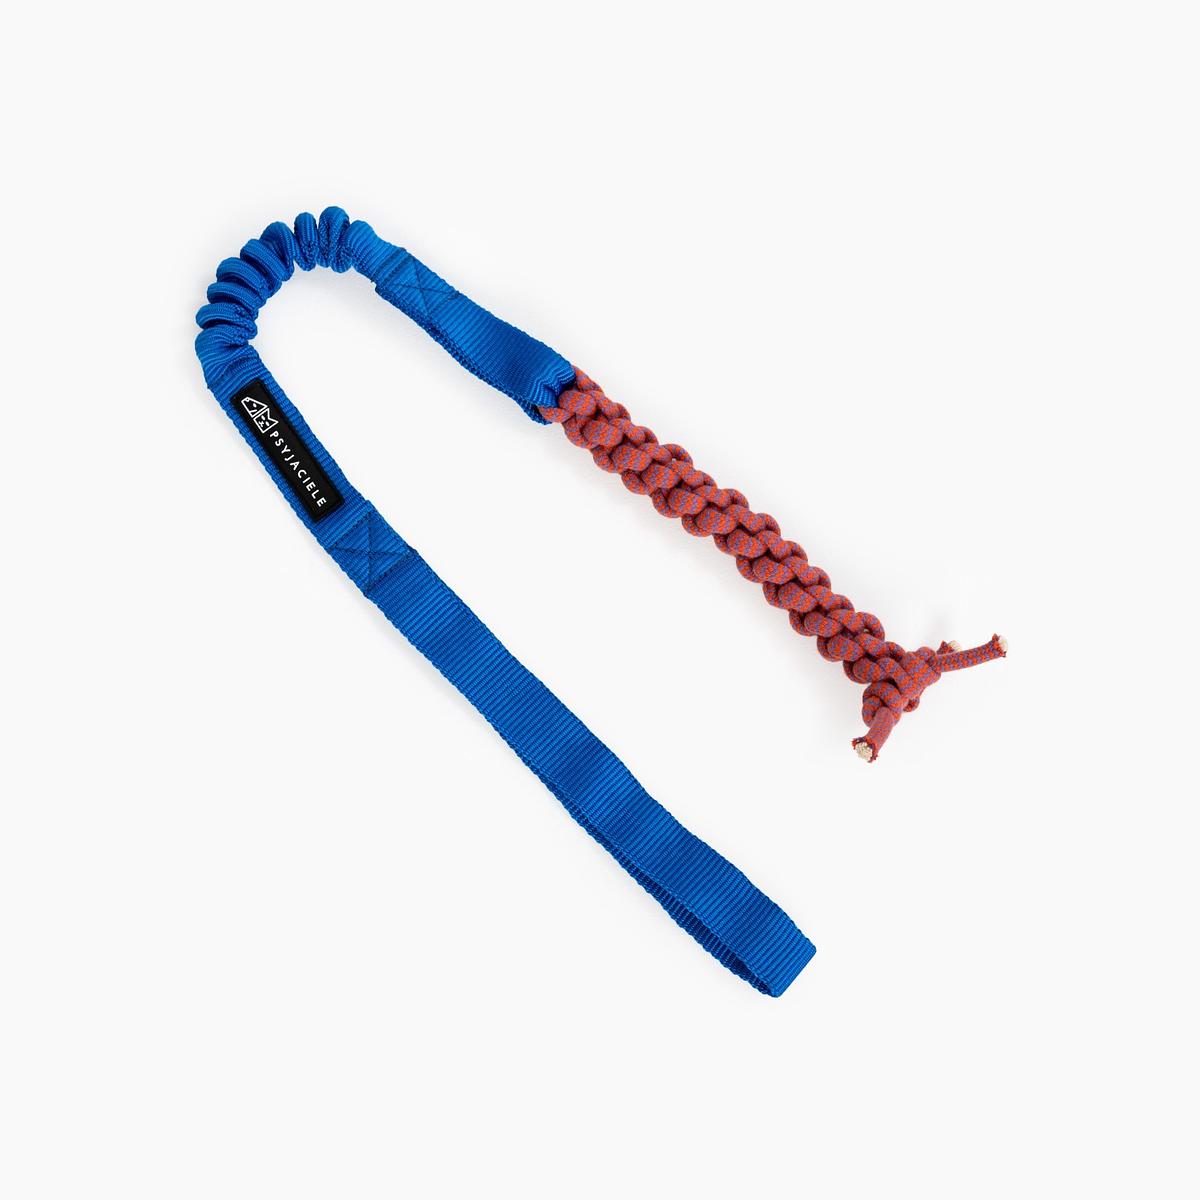 Rope toy "Navy AF"